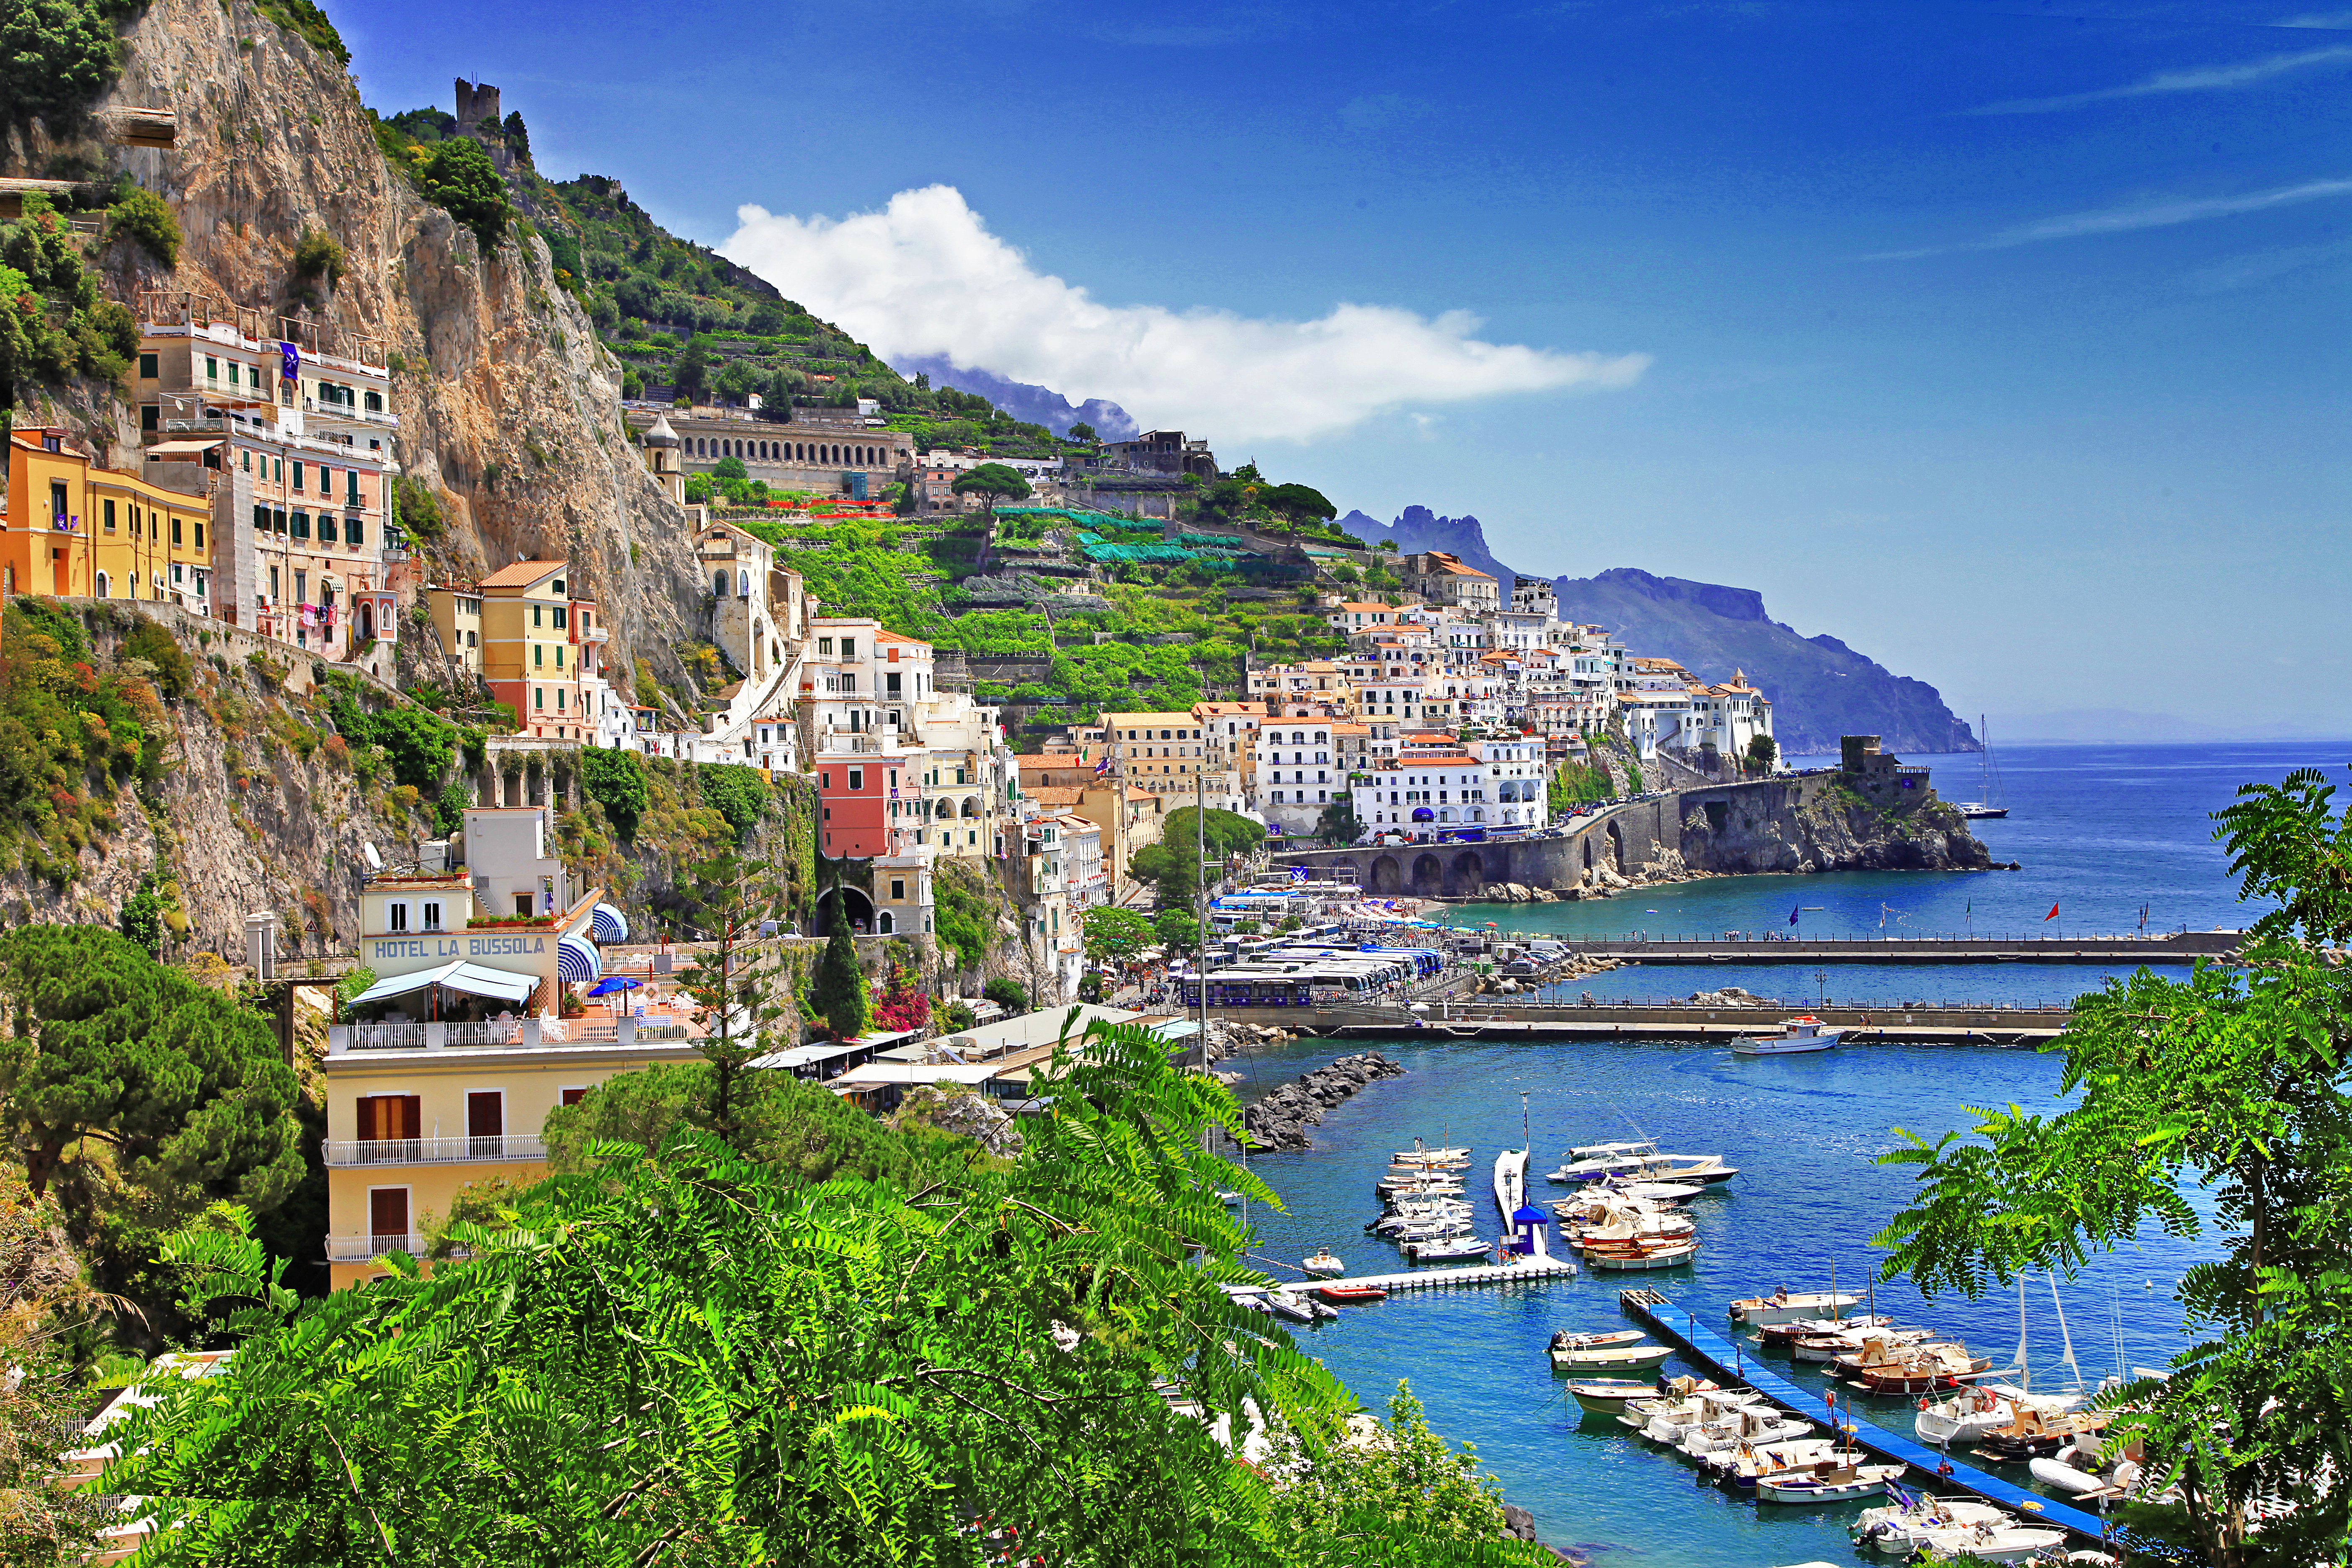 Enjoy a 9 Day Tour of Italy - Amalfi Coast